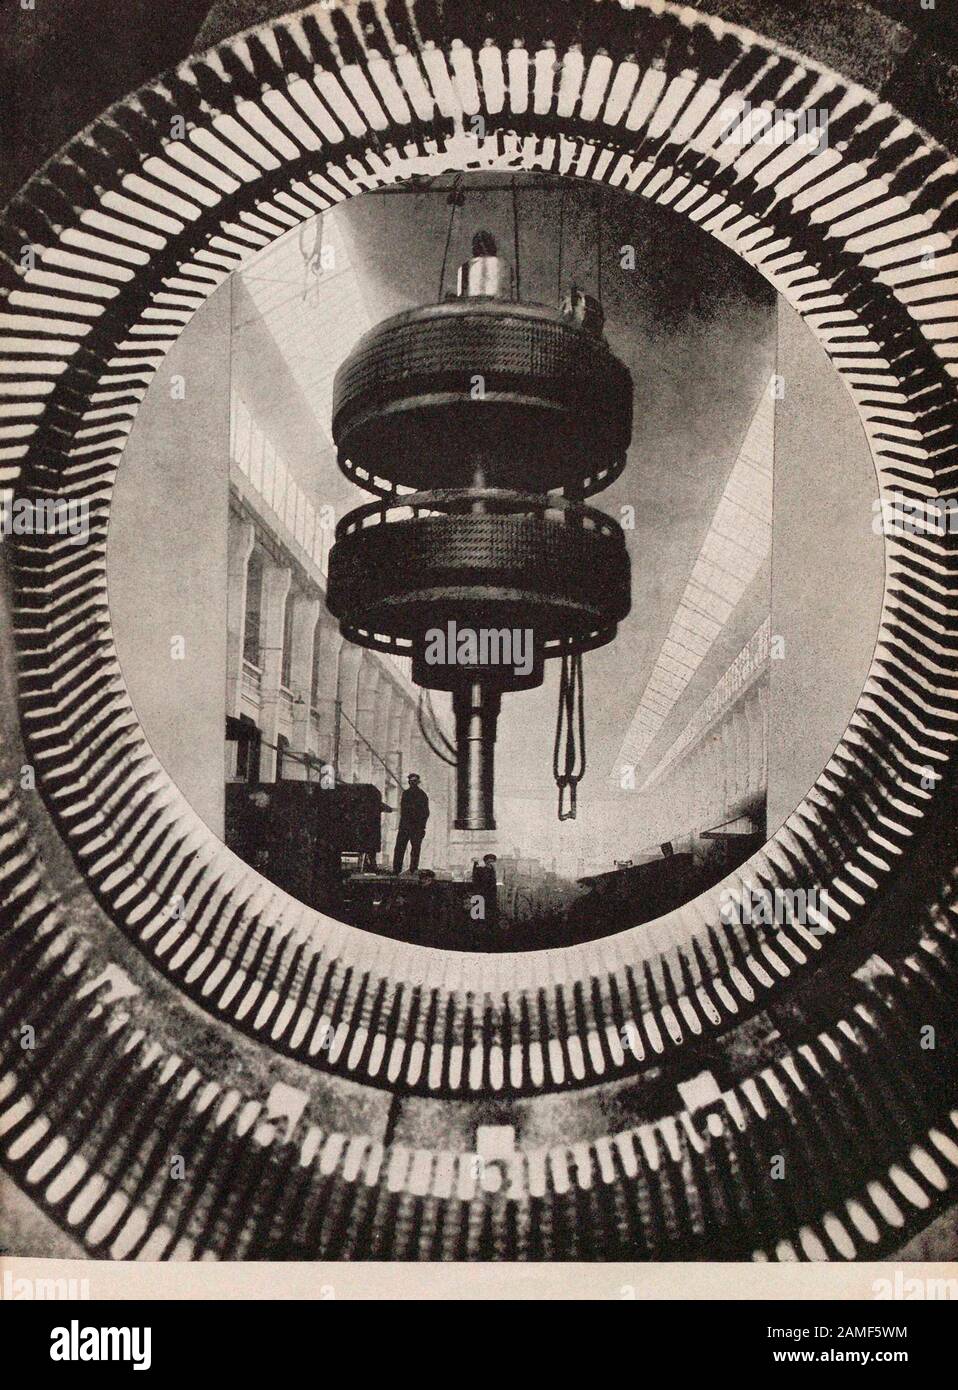 La vie en Union soviétique dans les années 1930. Du livre de propagande soviétique. Assemblage de la turbine géante Banque D'Images